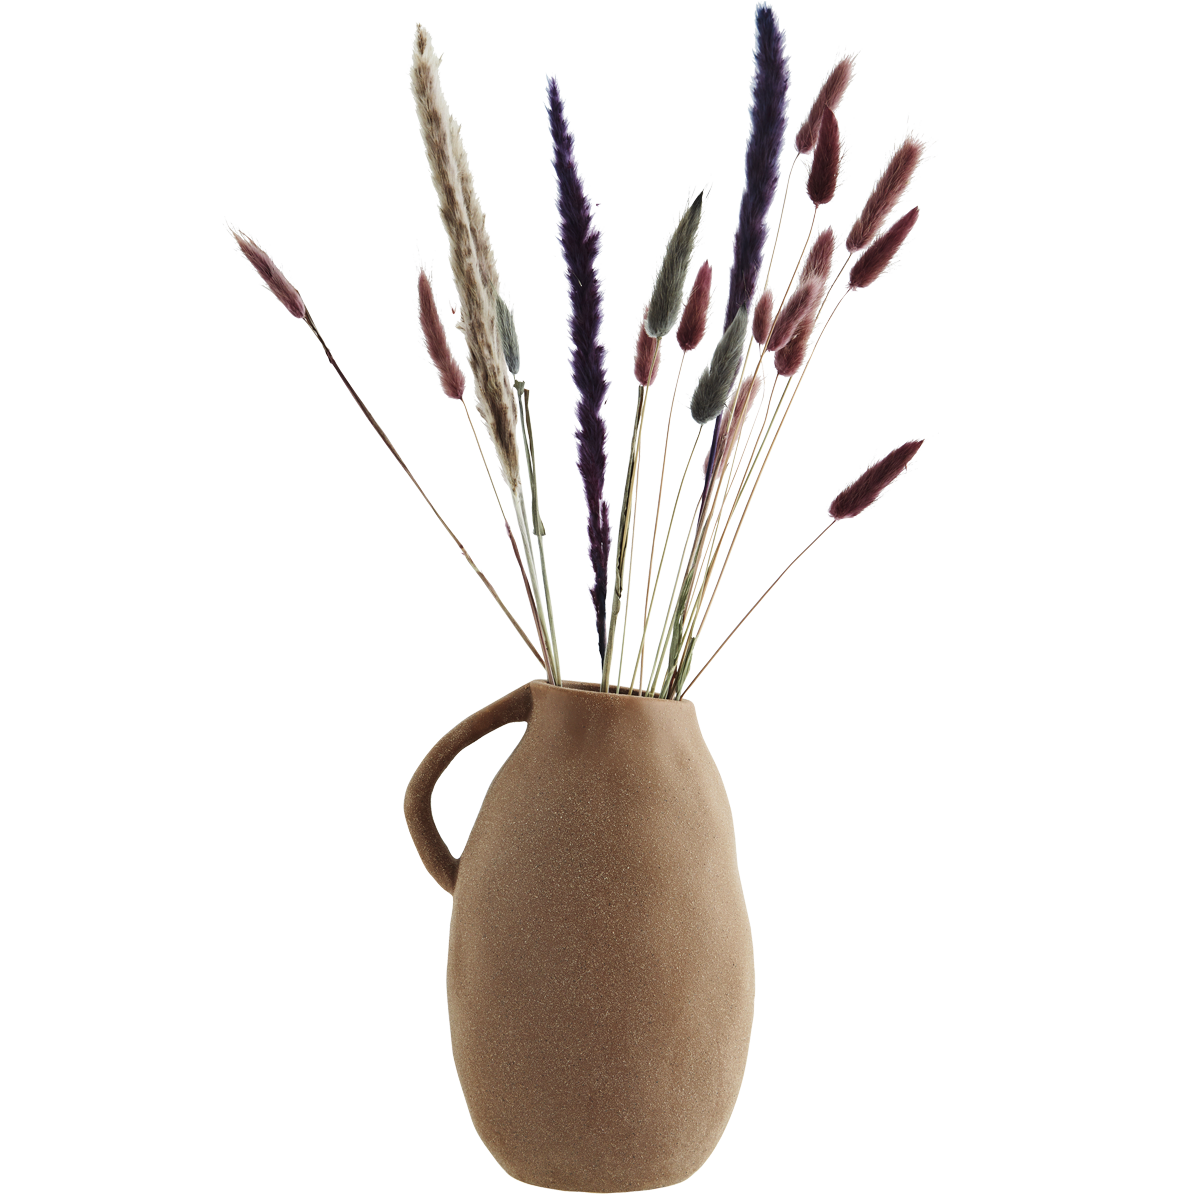 Stoneware vase w/ handle